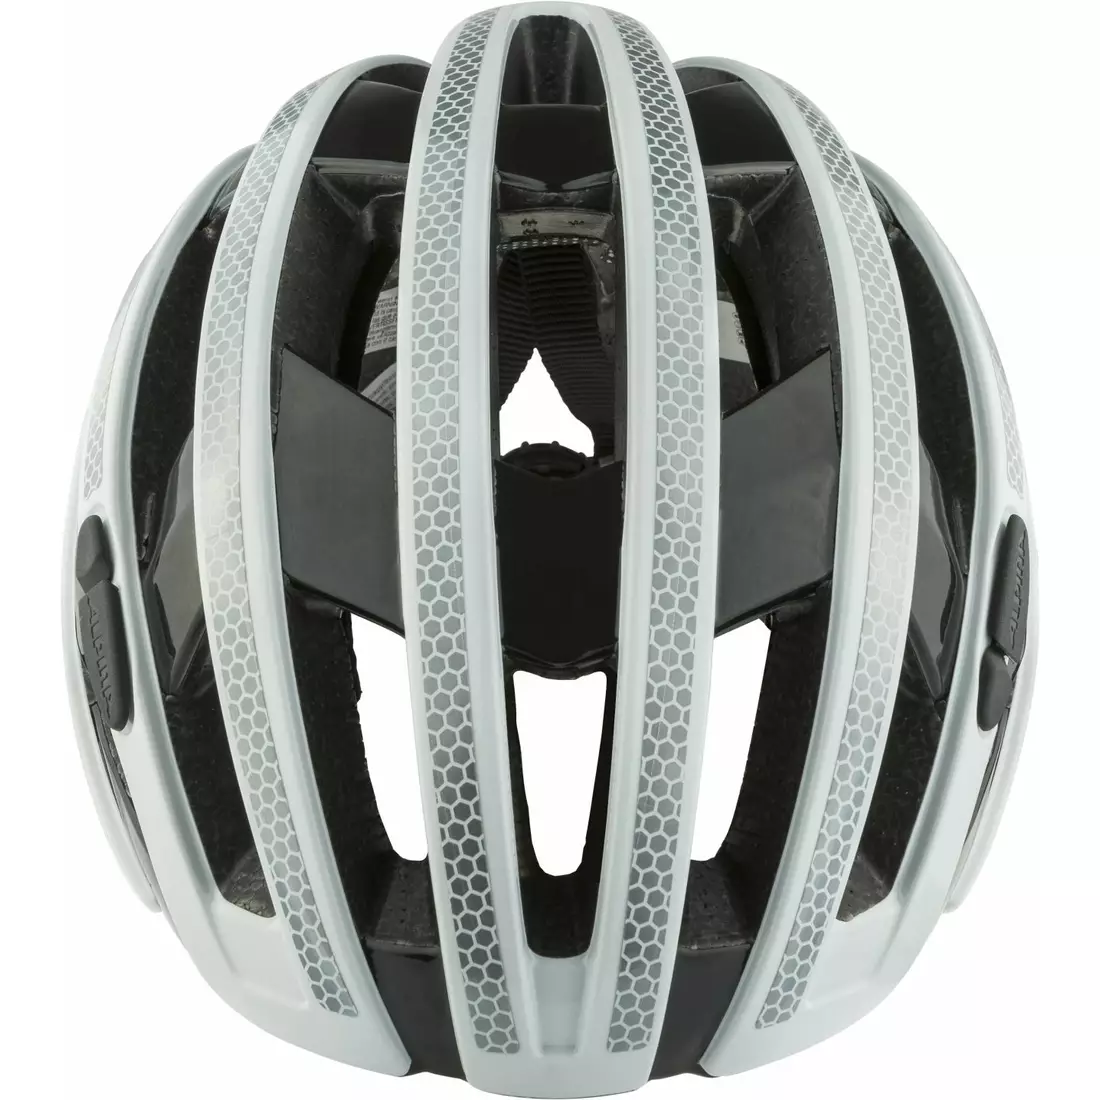 ALPINA RAVEL road bike helmet, reflective white gloss